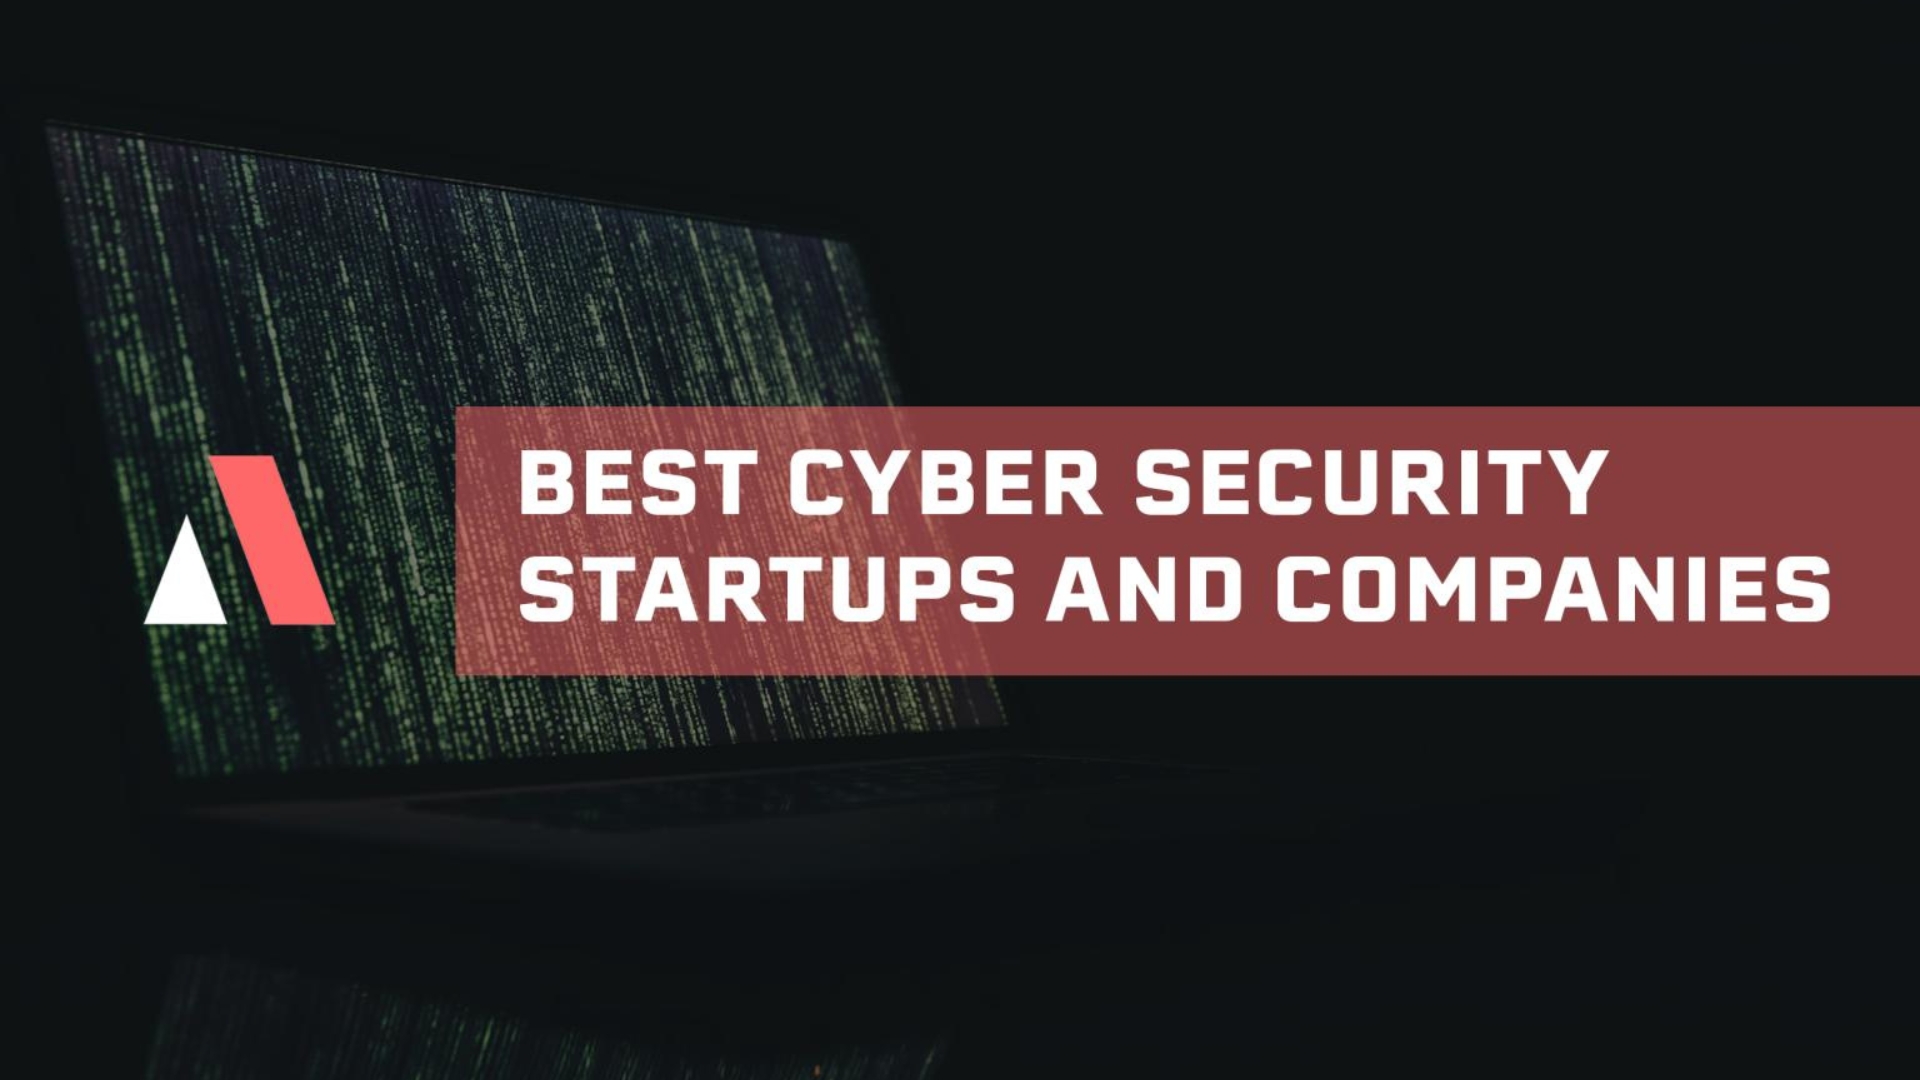 Las 20 startups y empresas de ciberseguridad más innovadoras (Milán)